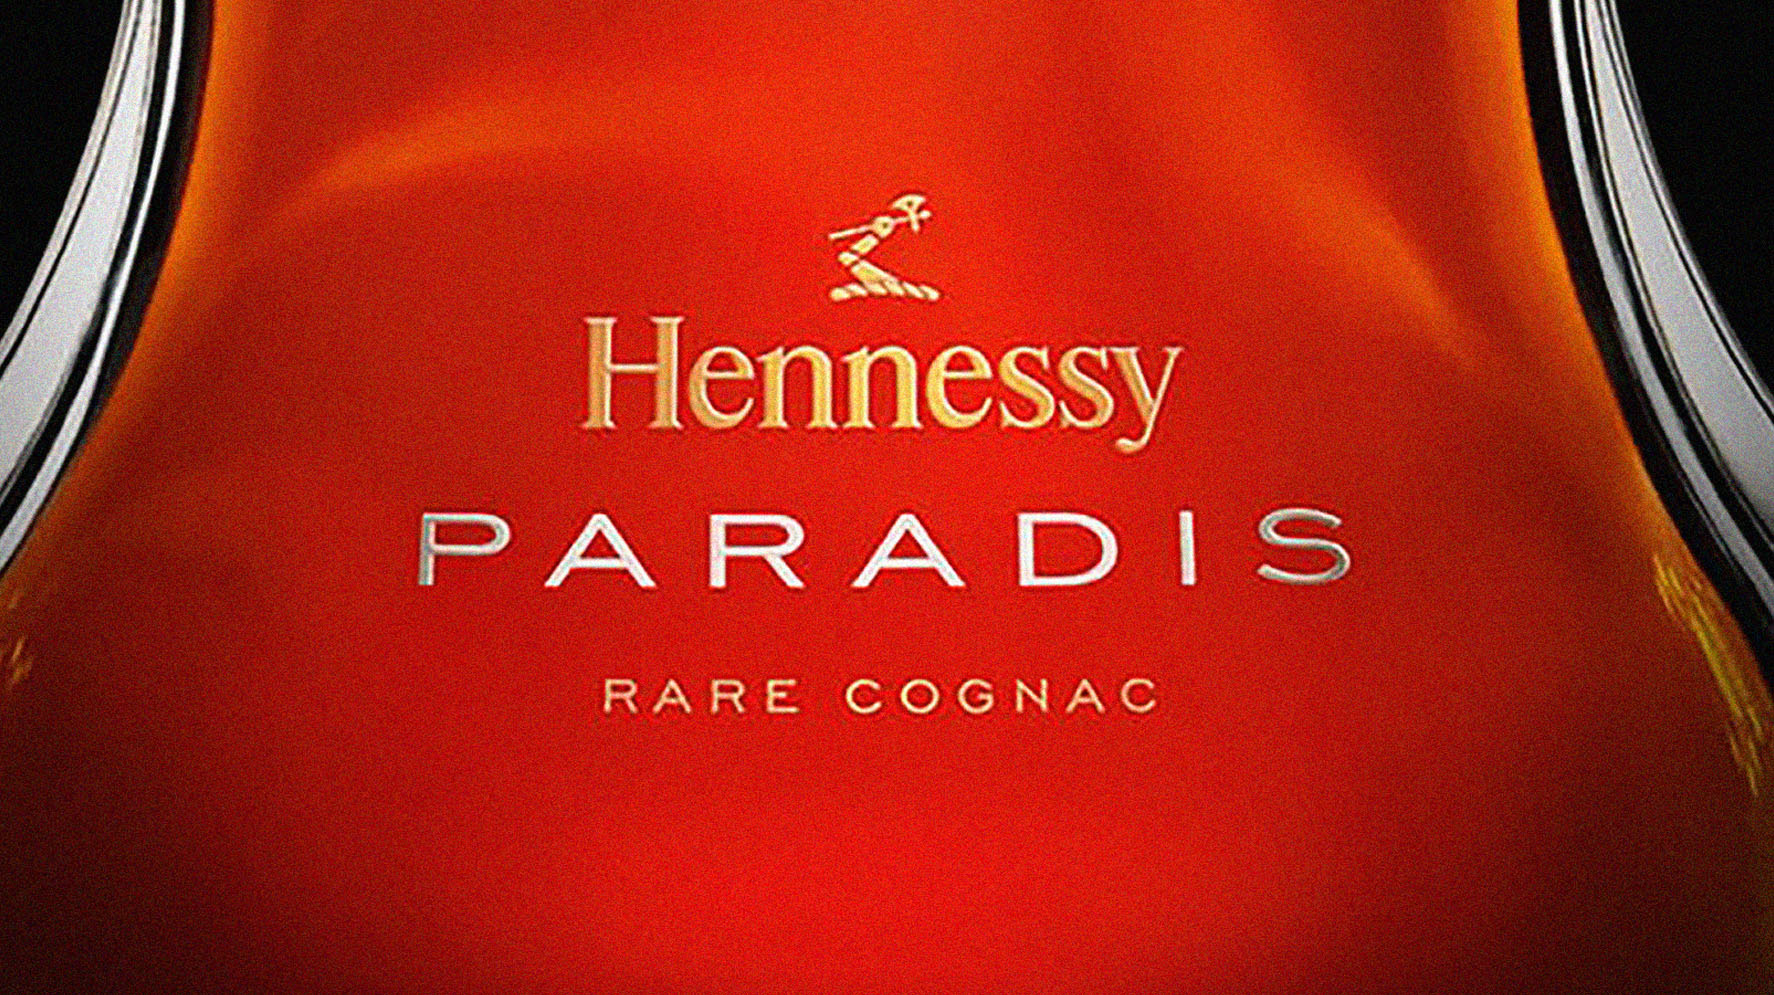 Hennesy Paradis